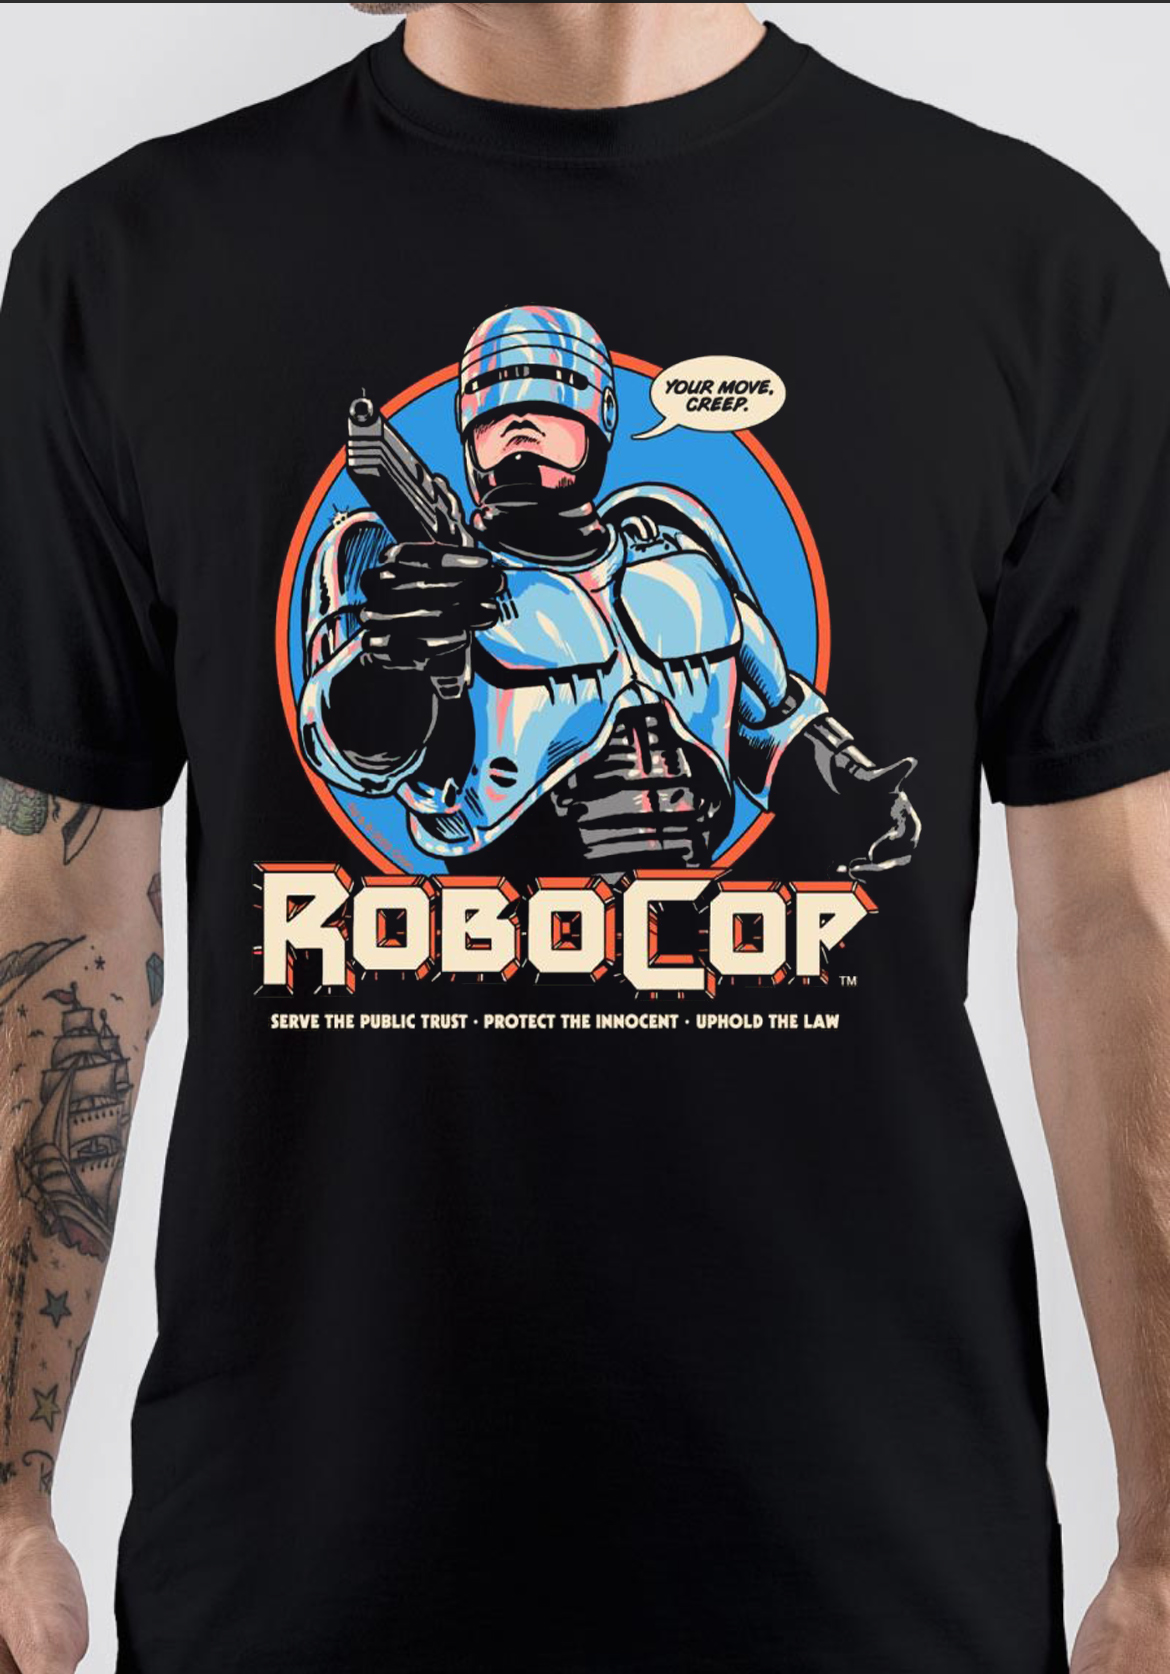 RoboCop T-Shirt And Merchandise